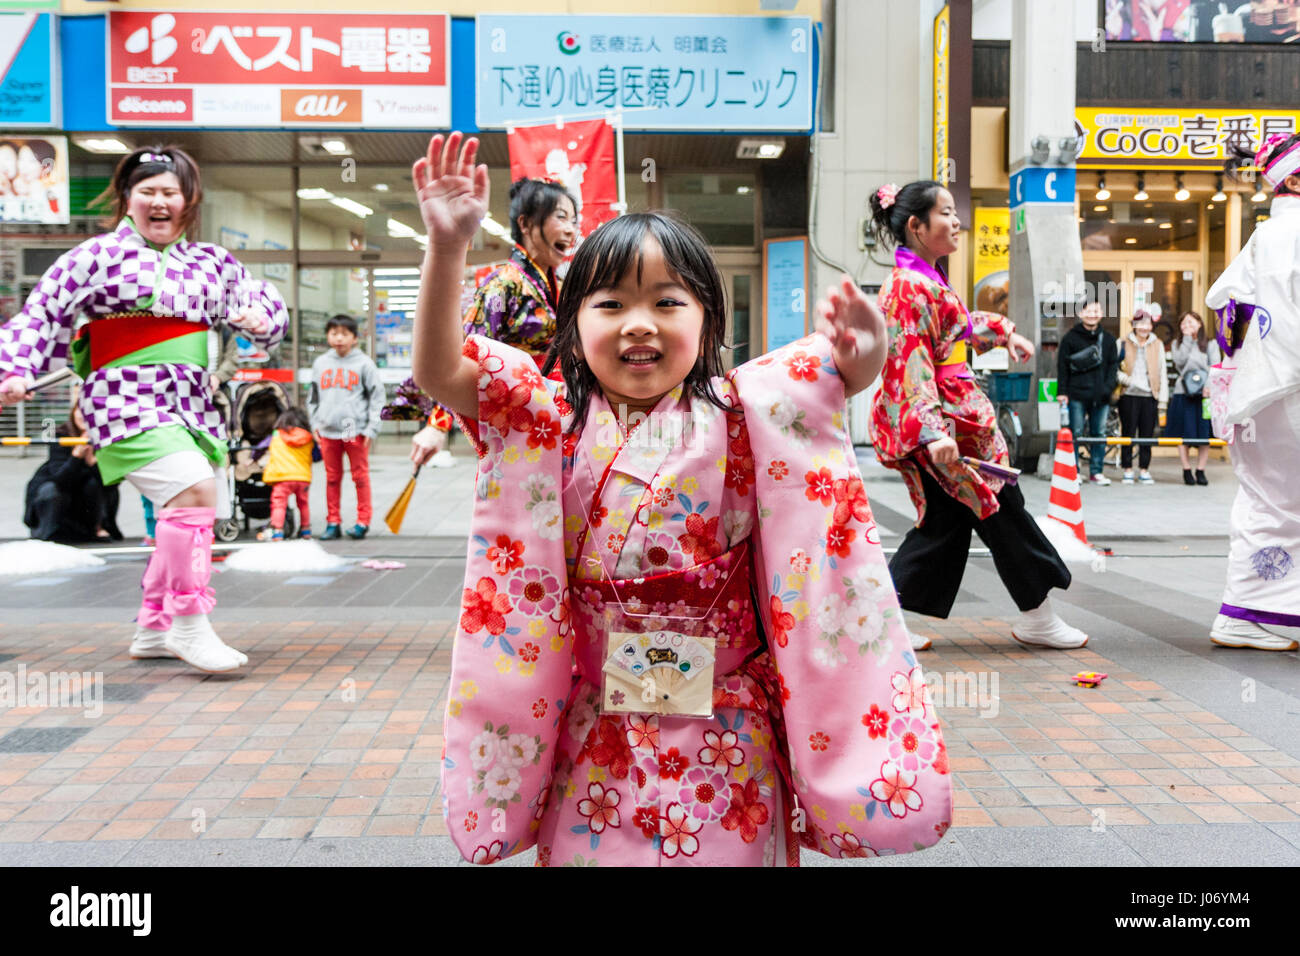 Le Japon, Kumamoto, danse Yosakoi Festival. Close-up. Little smiling girl in kimono rose danser dans centre commercial avec l'équipe de danse derrière elle. Eye-contact Banque D'Images